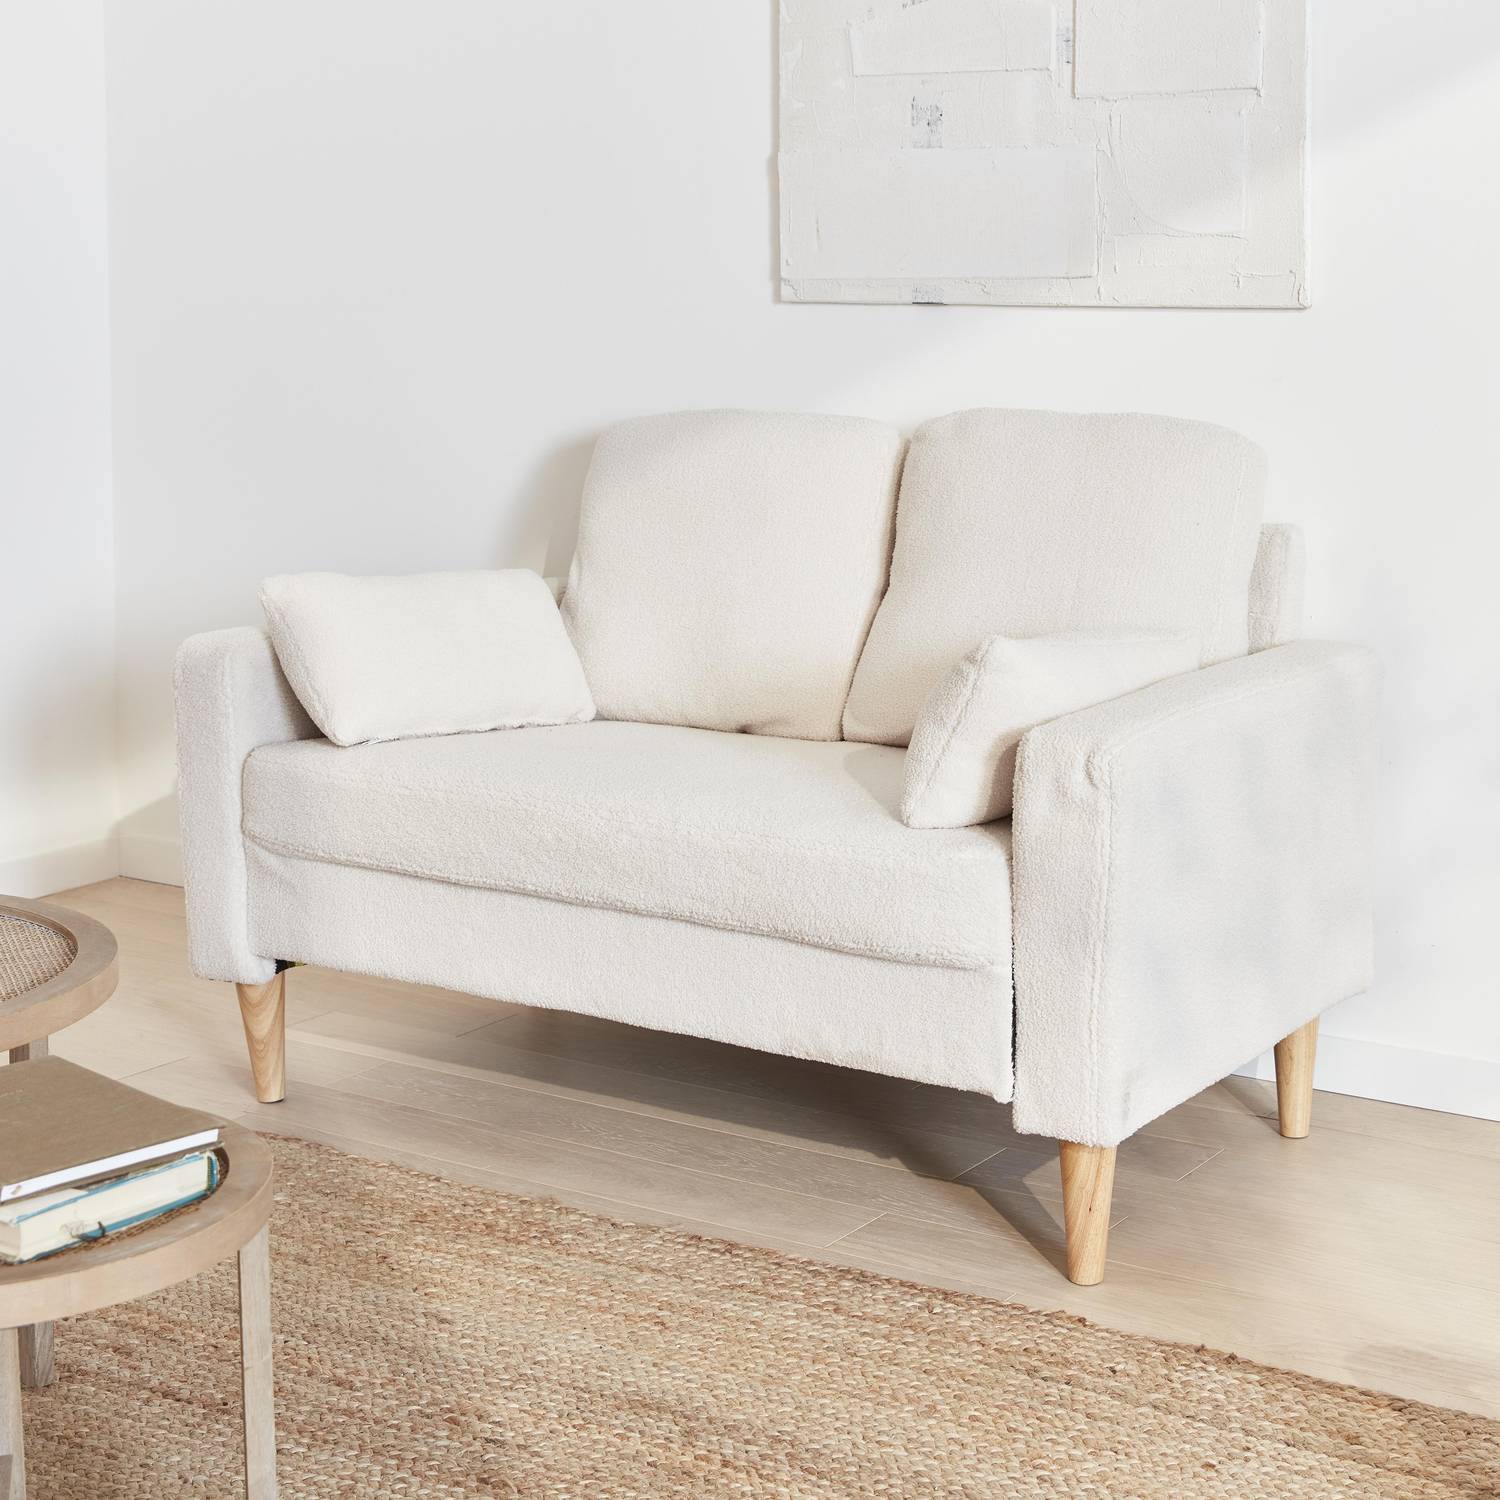 Canapé à bouclettes blanches - Bjorn - Canapé 2 places fixe droit pieds bois, style scandinave   Photo2